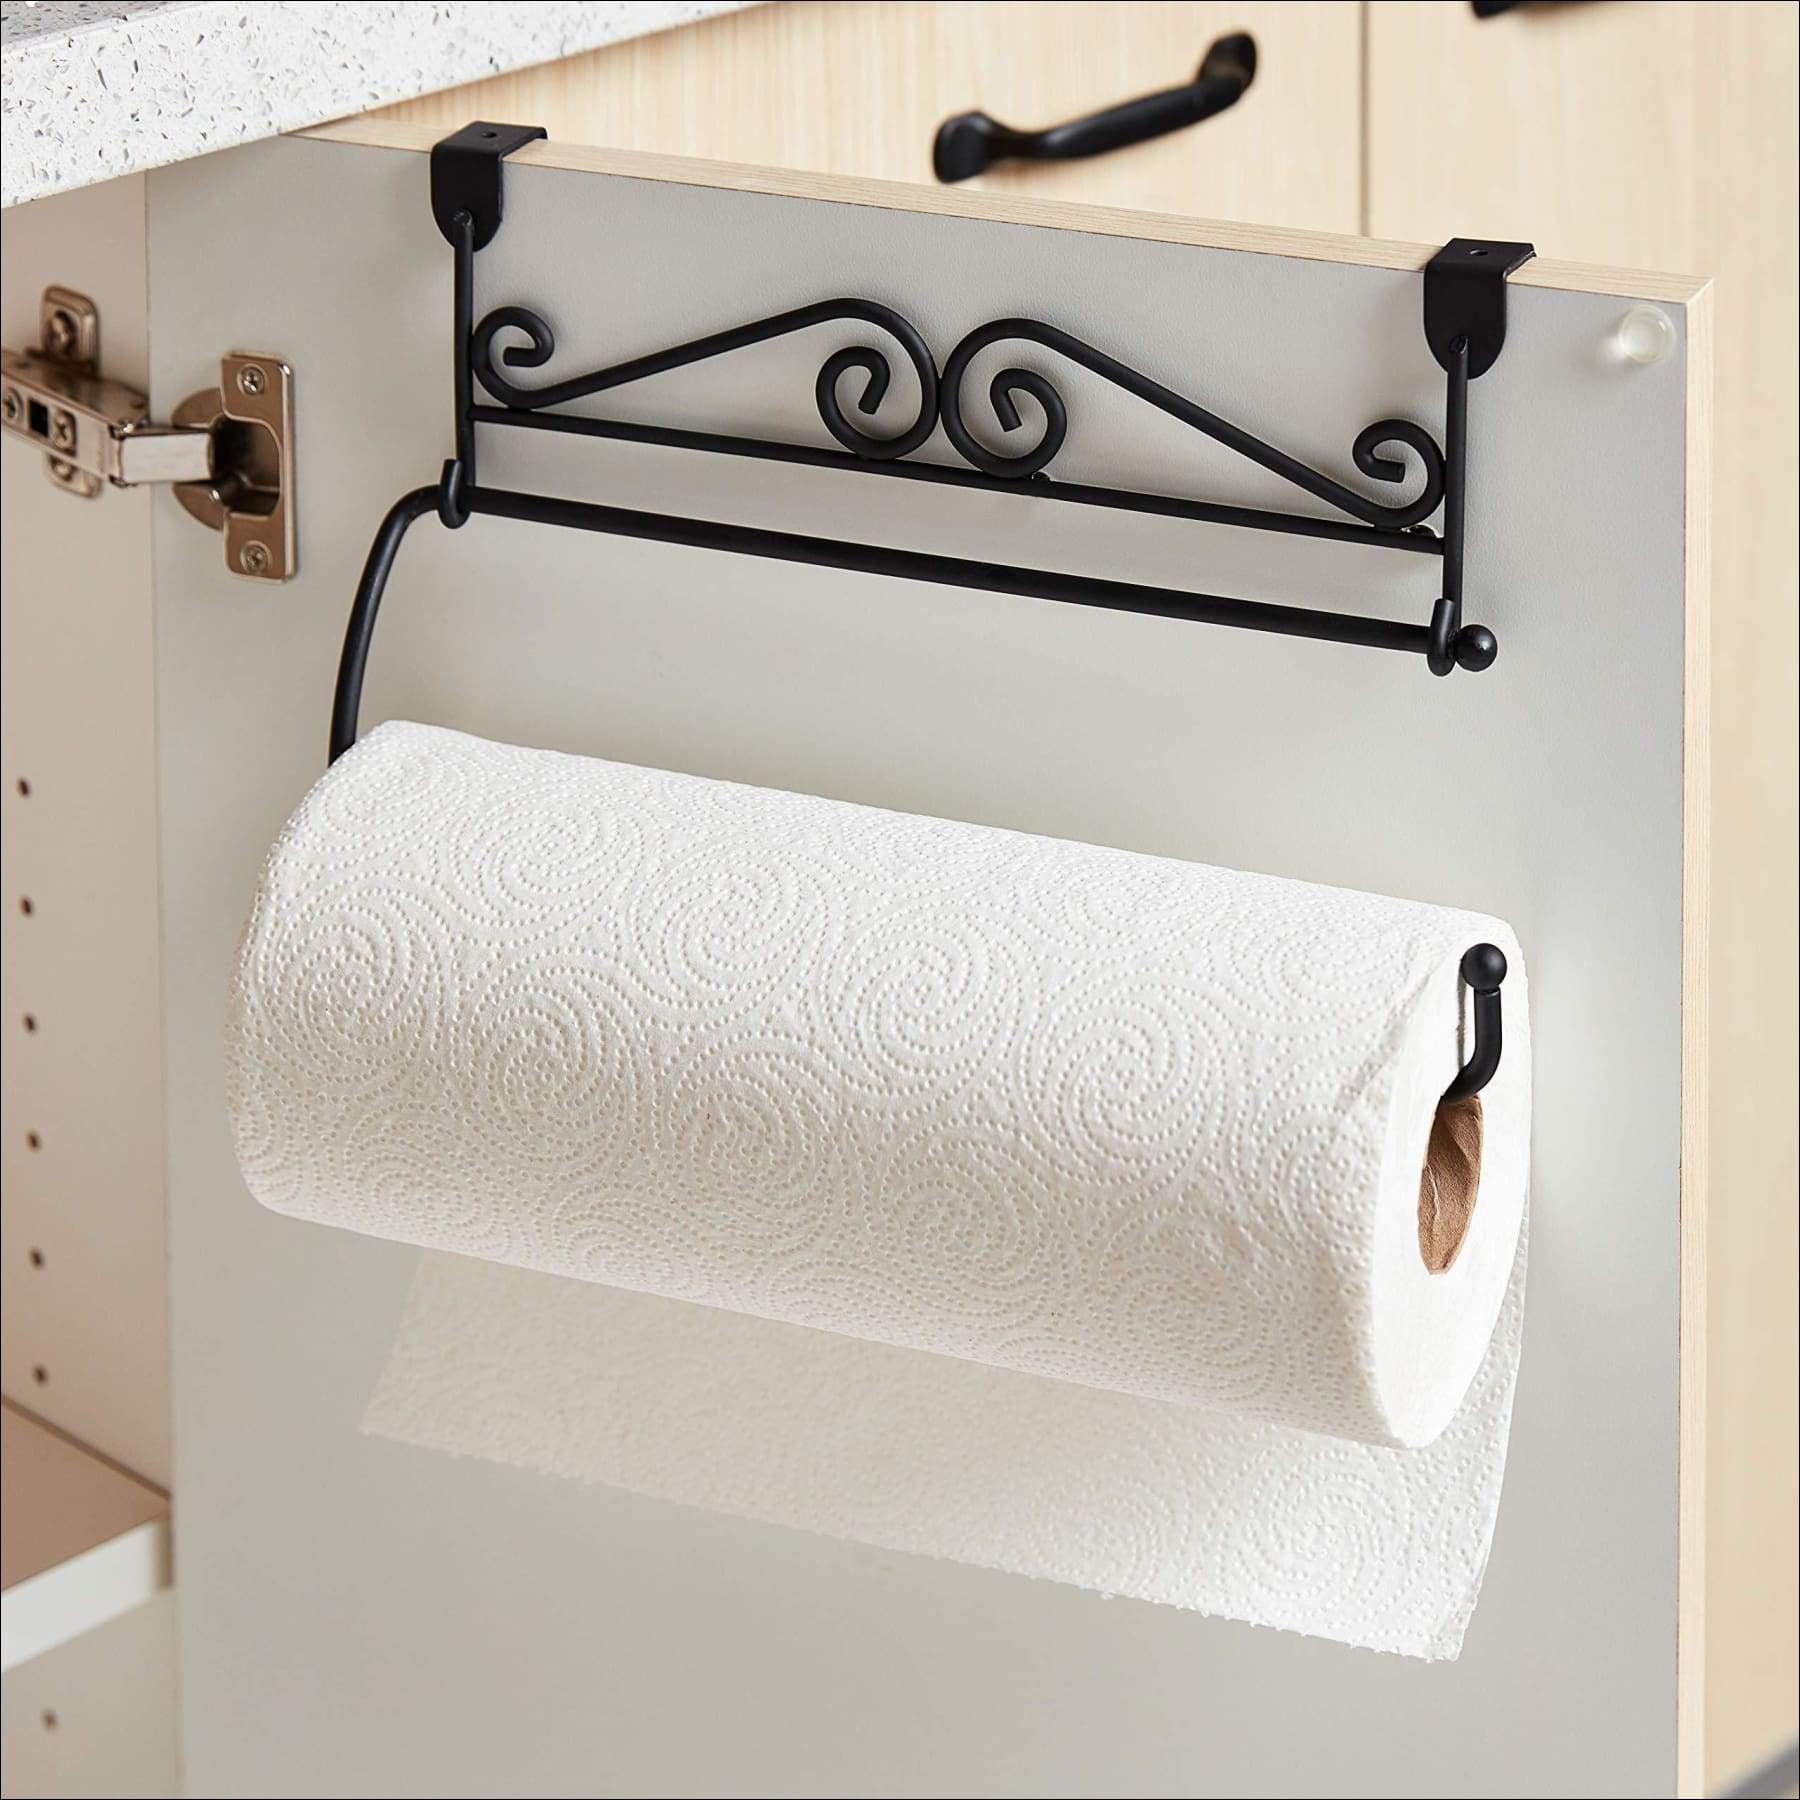 Spectrum™ Over-the-Cabinet Door Vertical Paper Towel Holder, Paper